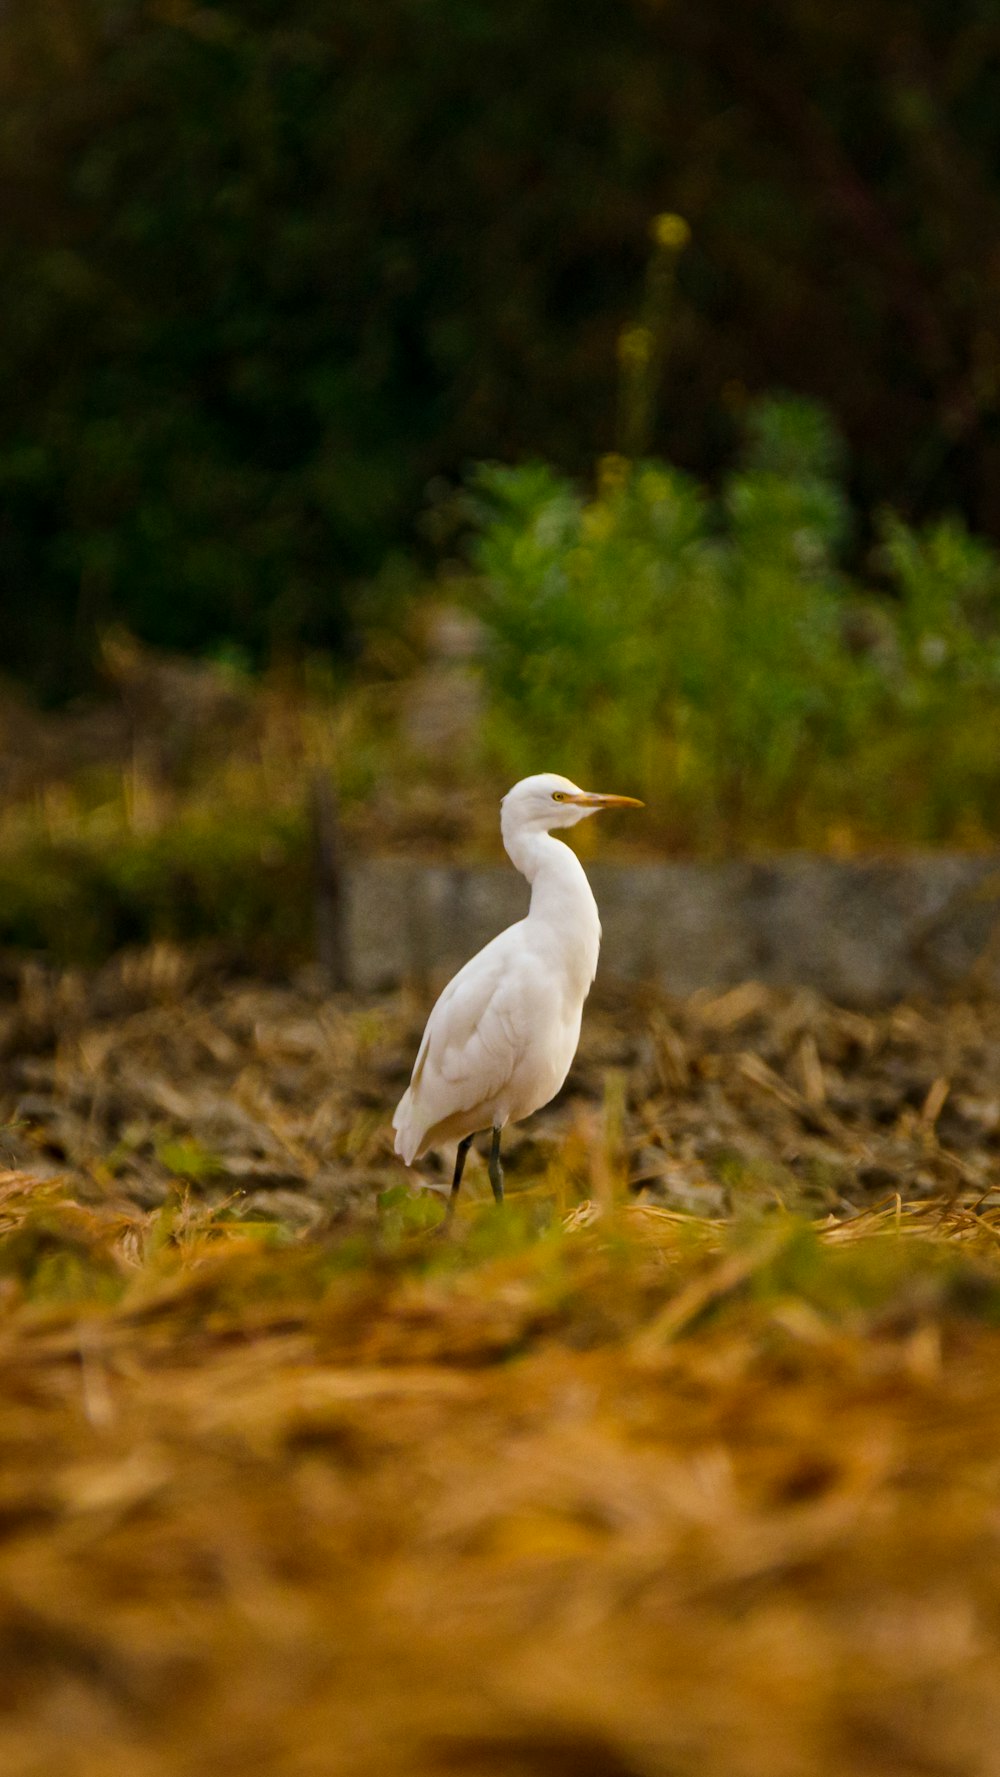 white bird on brown grass during daytime